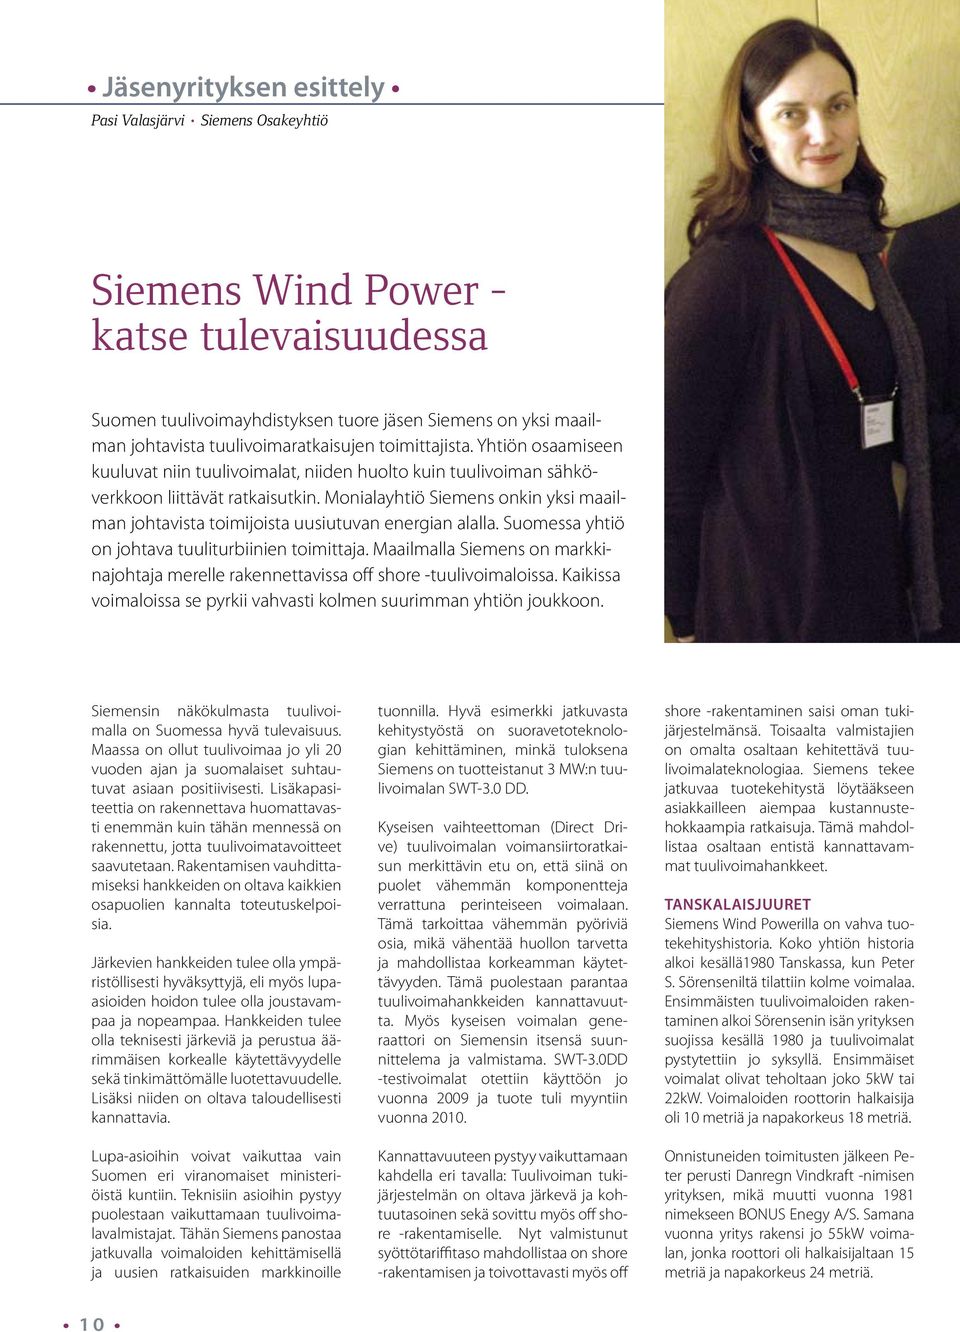 Monialayhtiö Siemens onkin yksi maailman johtavista toimijoista uusiutuvan energian alalla. Suomessa yhtiö on johtava tuuliturbiinien toimittaja.